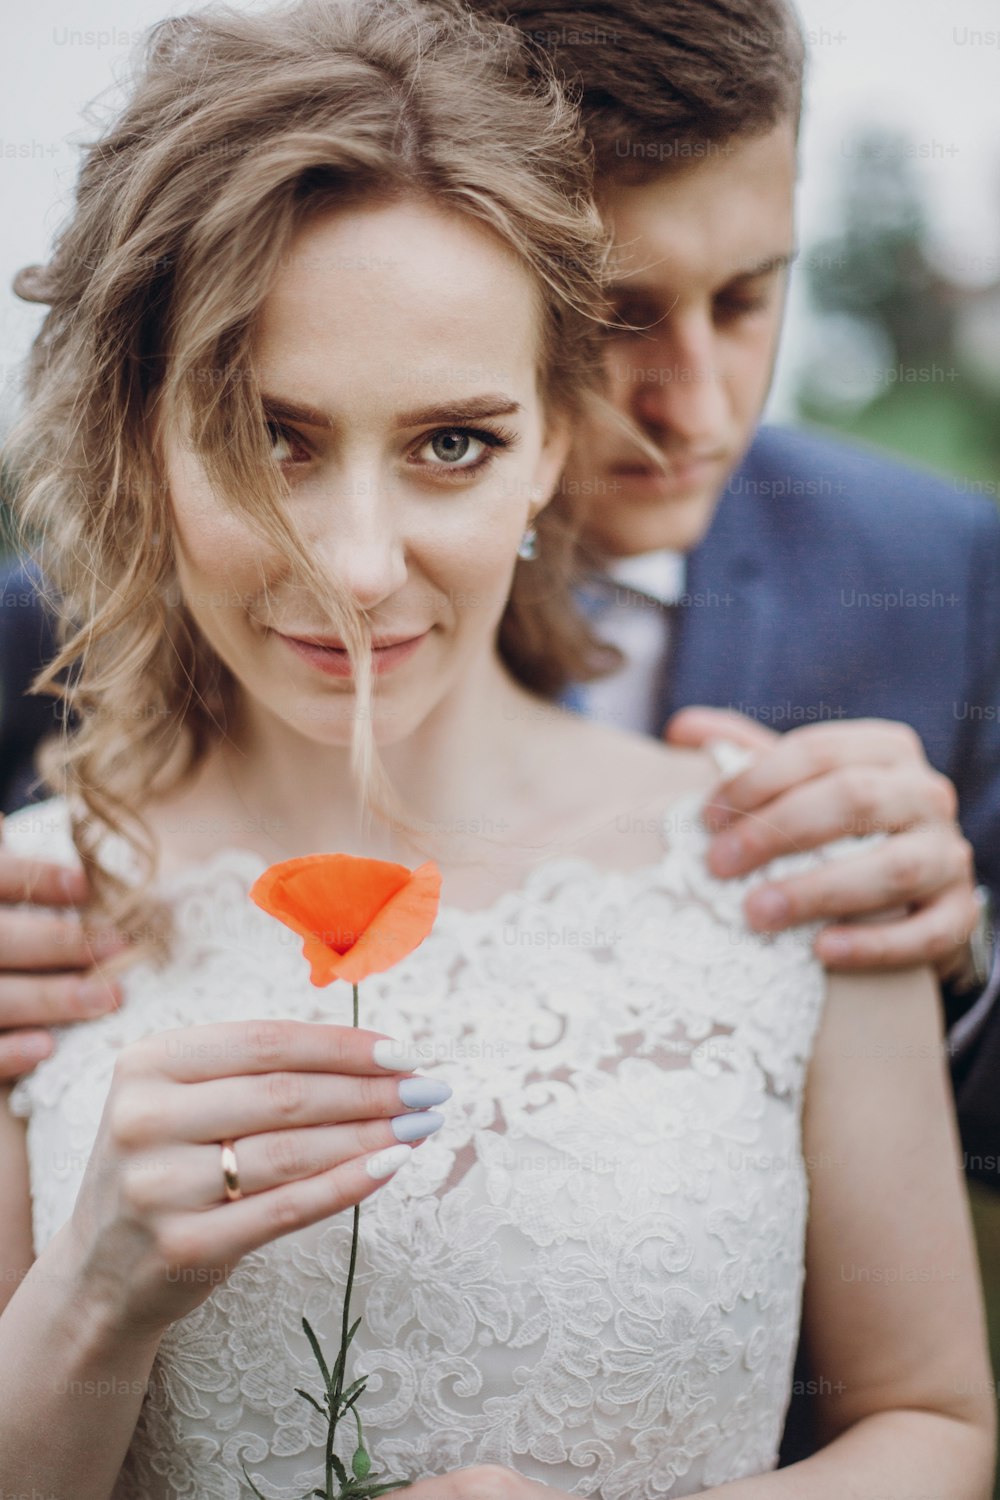 Bräutigam umarmt schöne wunderschöne Braut mit Mohnblume. Glückliches sinnliches Hochzeitspaar, das sich in Liebe umarmt. Glückliche romantische Momente. Elopement-Konzept. Platz für Text